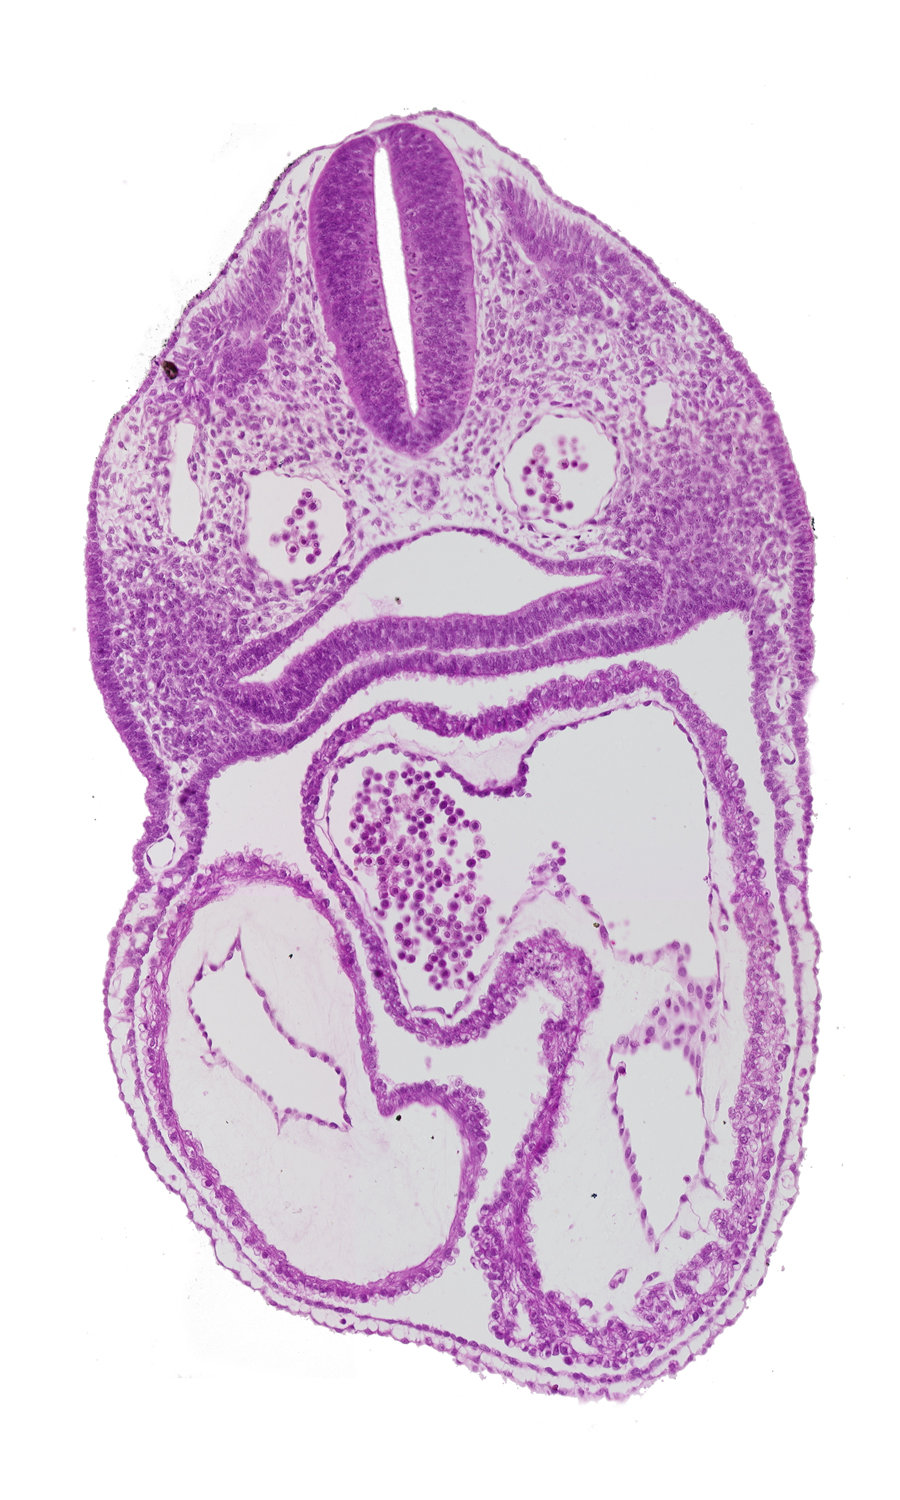 cardiac jelly, conus cordis, dermatomyotome 3 (O-3) , dorsal aorta, ectoderm, interatrial foramen (primum), interatrial sulcus, junction of conus cordis and right ventricle, left atrium, left ventricle, mesoderm, notochord, pericardial cavity, pharynx, primary interatrial septum (septum primum), rhombencephalon (Rh. D), right atrium